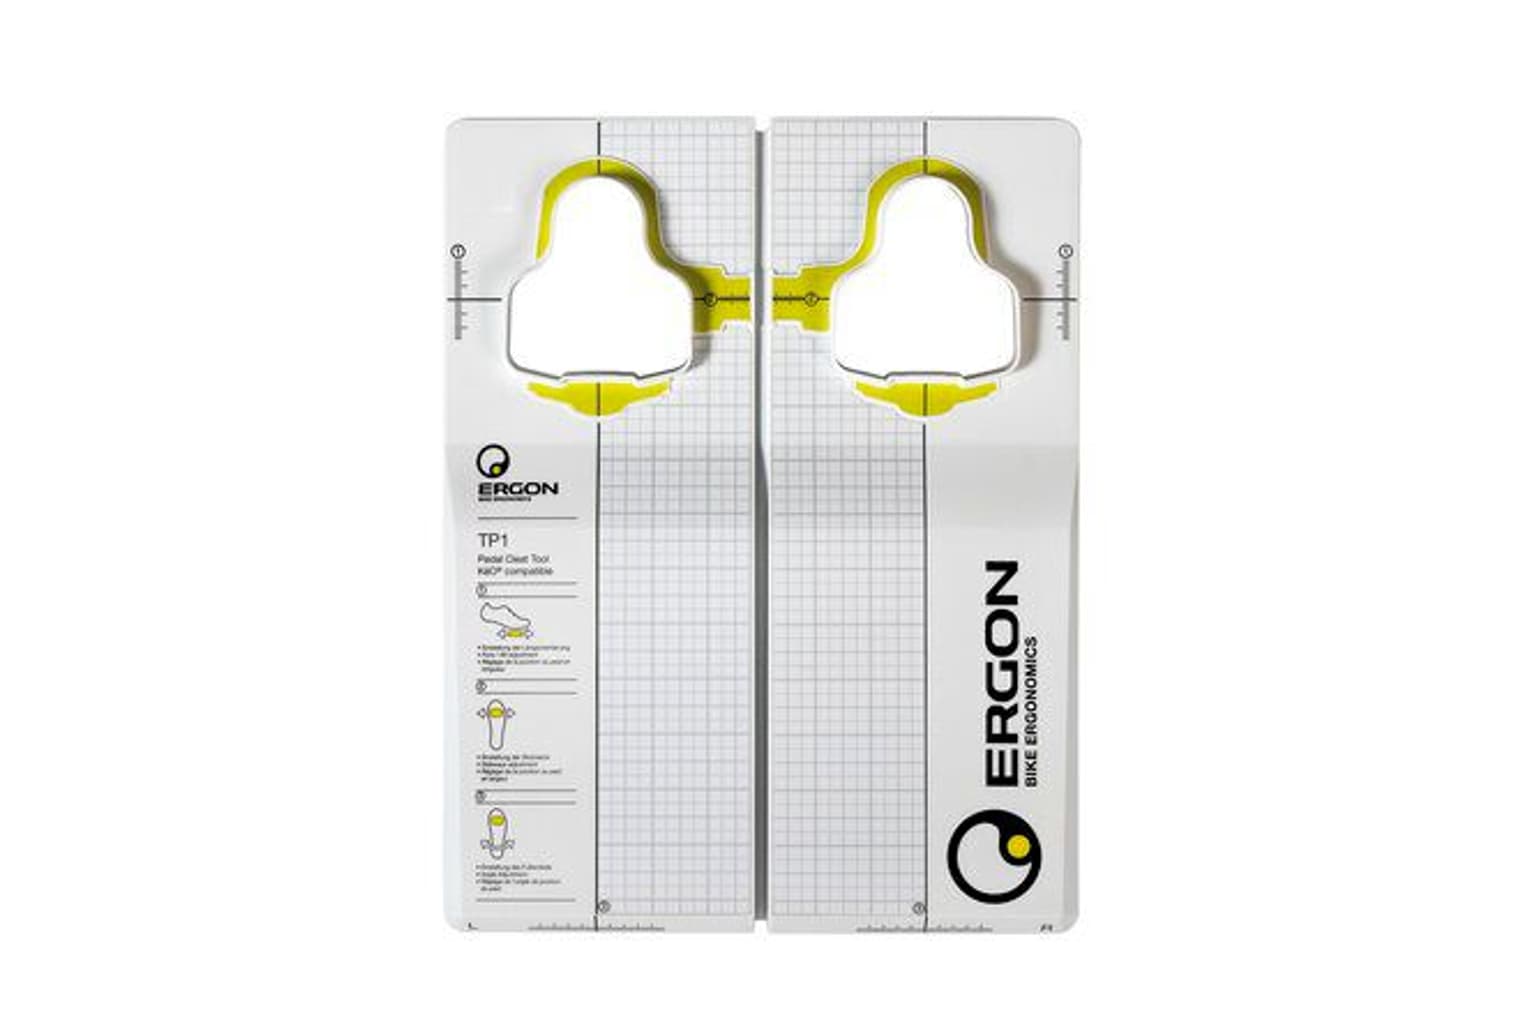 Ergon Ergon Pedal Cleat Tool TP-1 für Look Kéo Schuhplatten 1